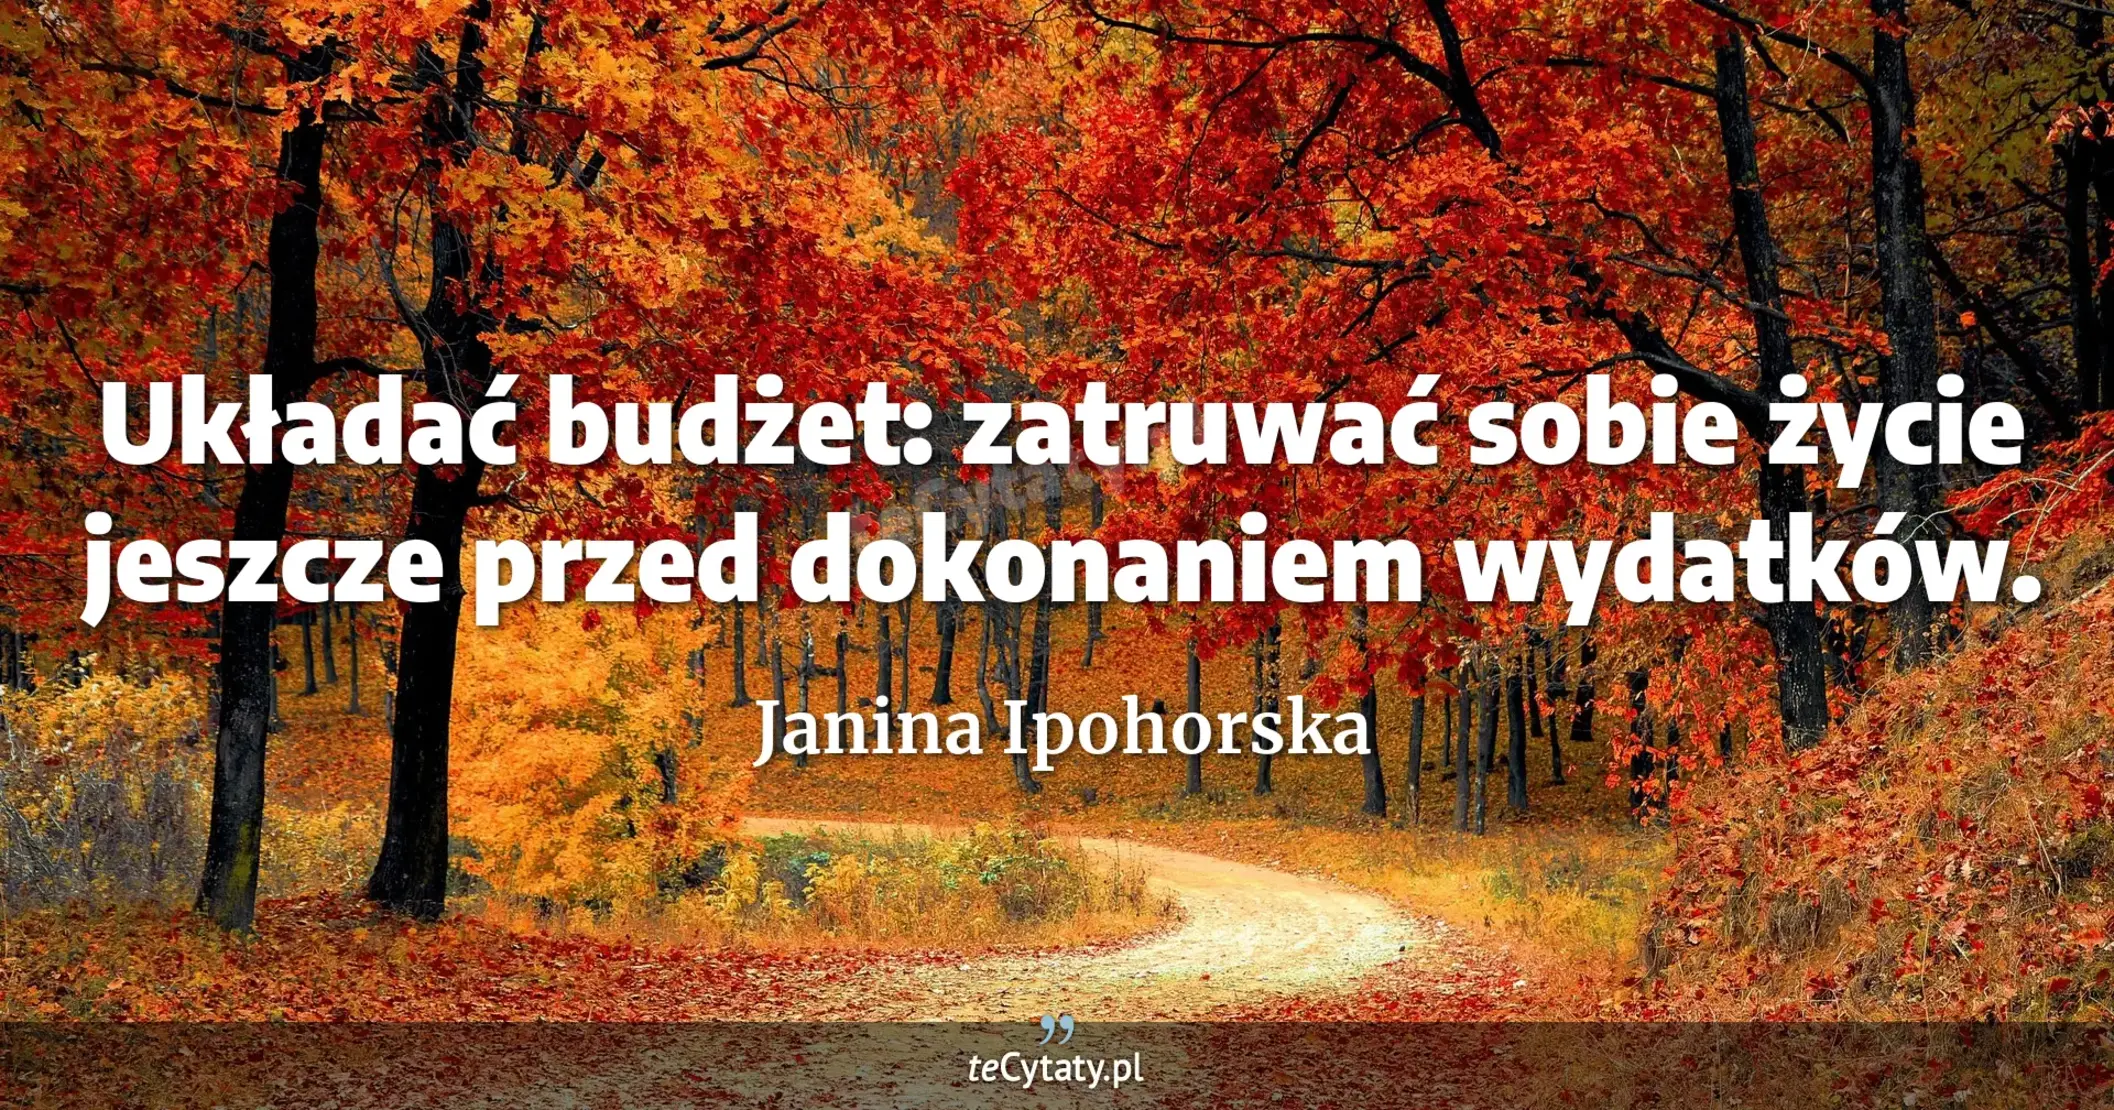 Układać budżet: zatruwać sobie życie jeszcze przed dokonaniem wydatków. - Janina Ipohorska